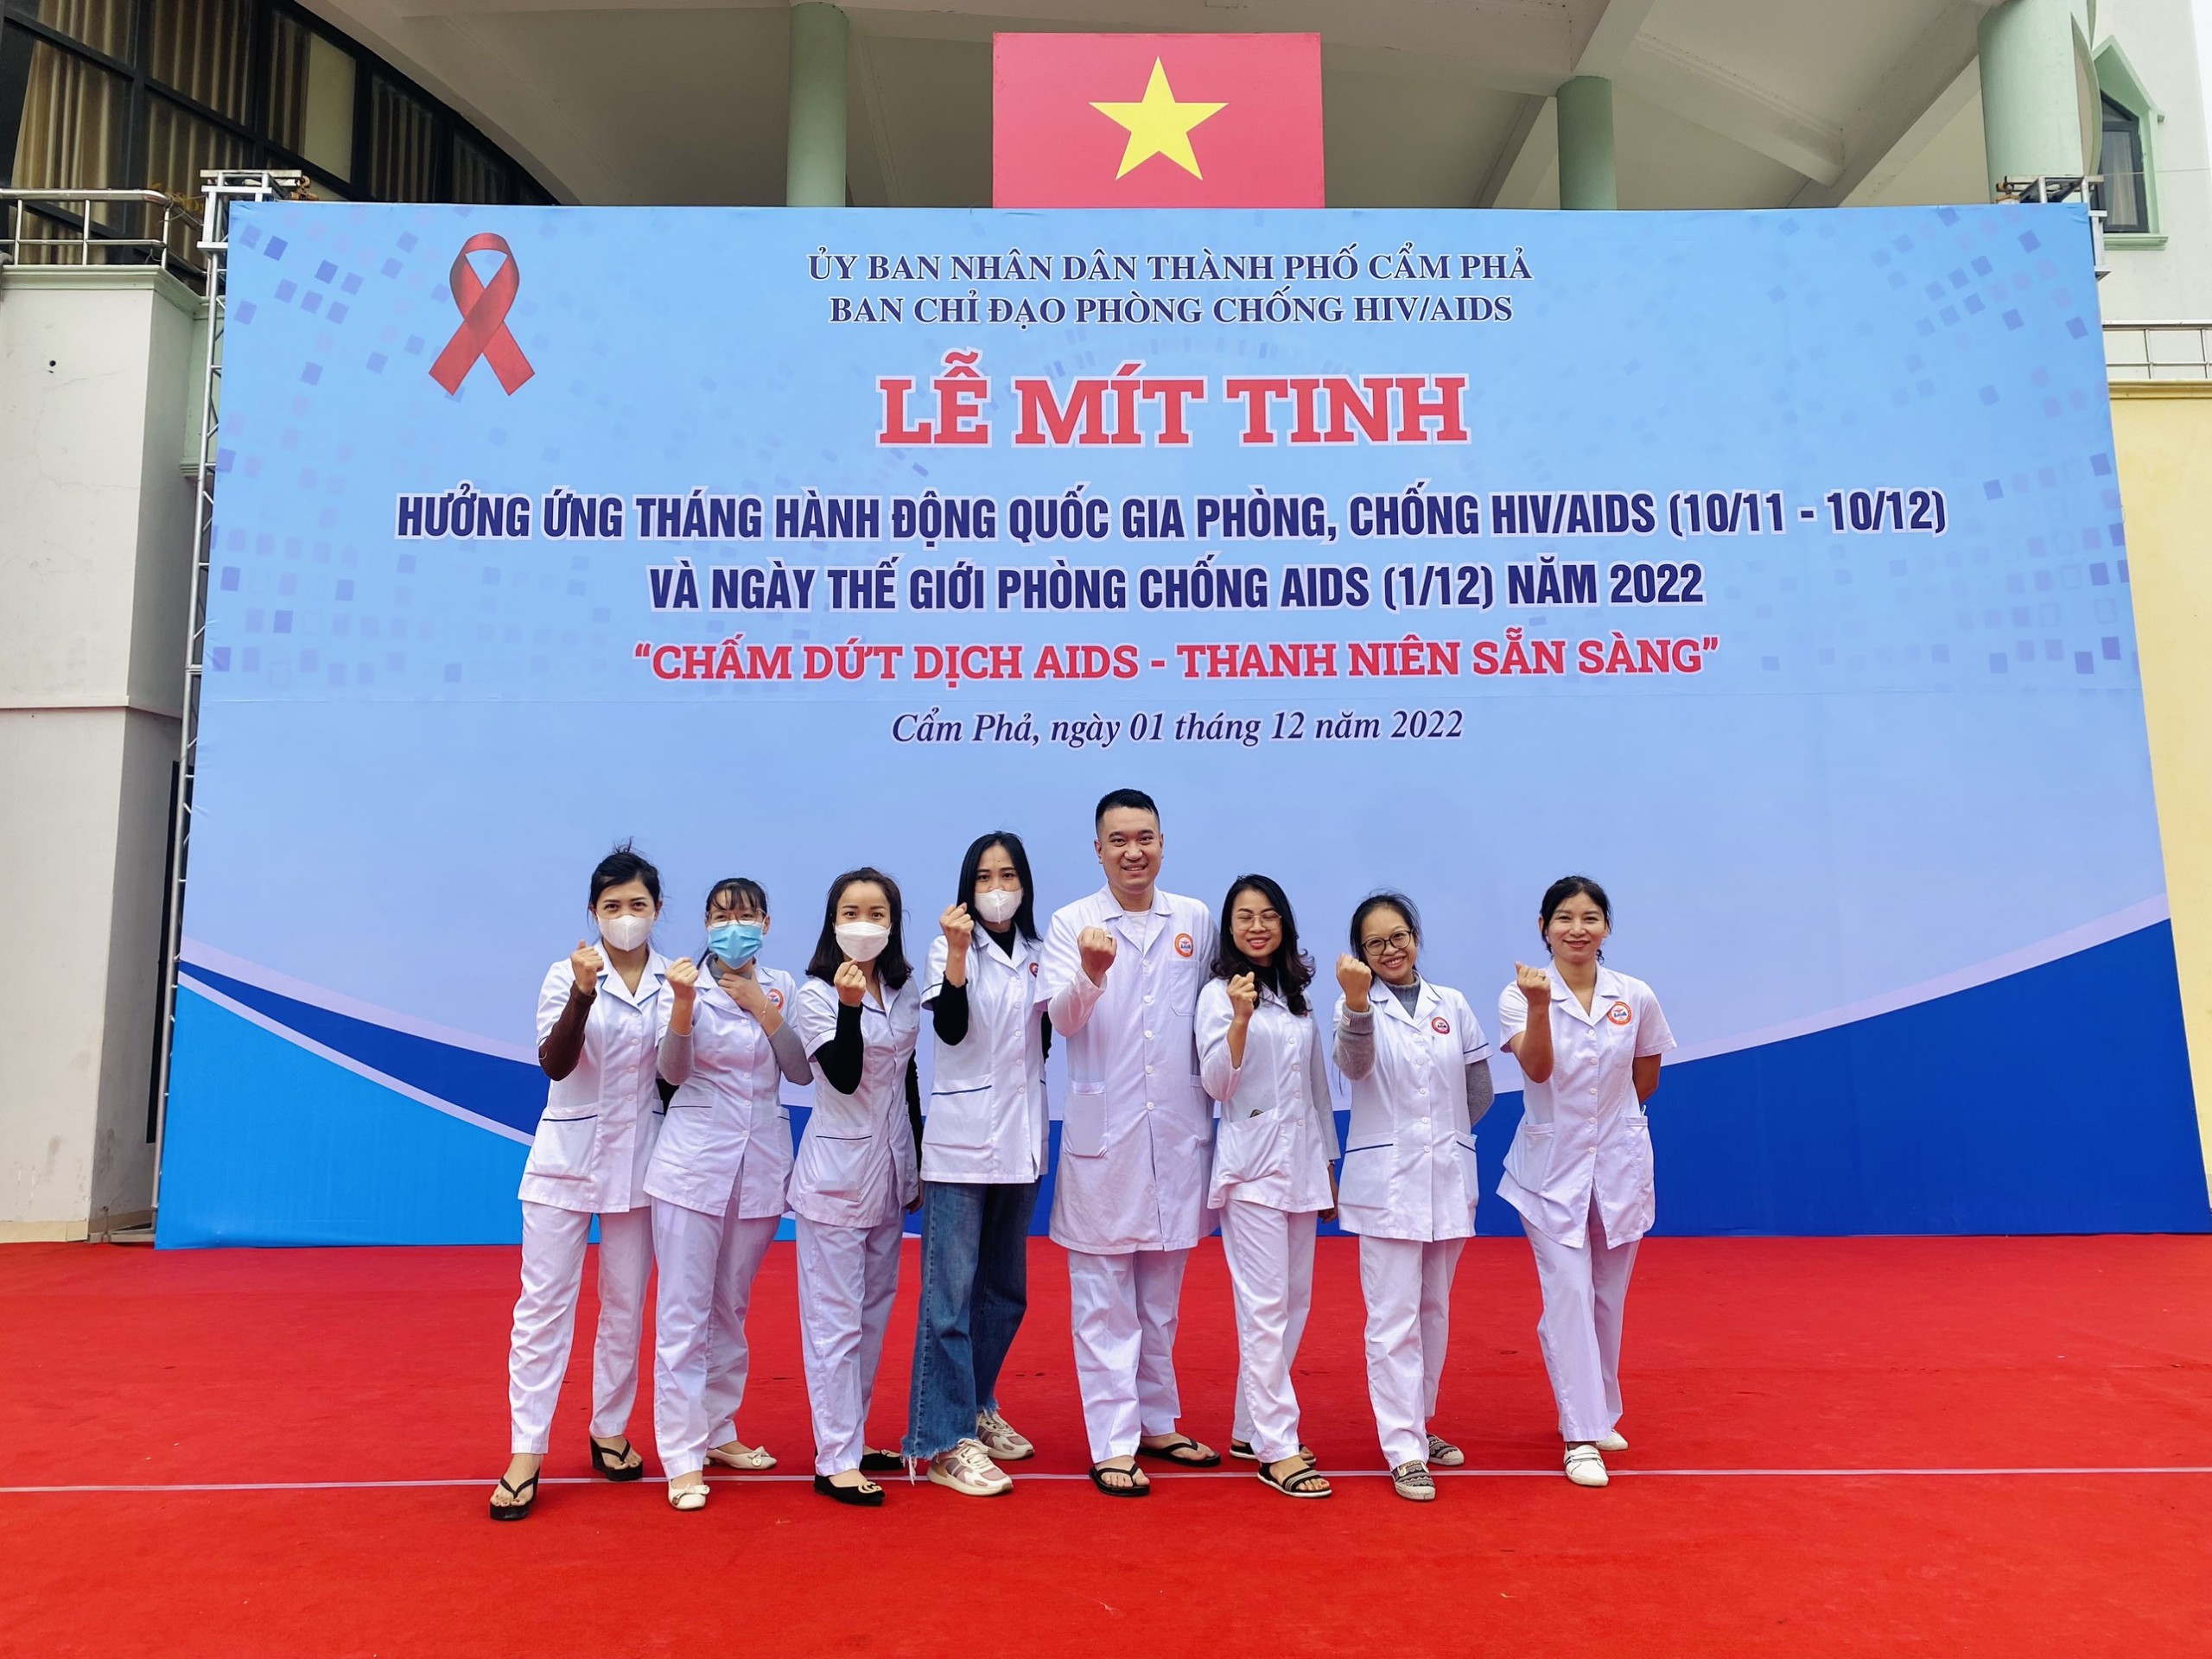 Bệnh viện ĐKKV Cẩm Phả tham dự buổi Lễ mít tinh hưởng ứng tháng hành động quốc gia phòng, chống HIV/AIDS và ngày thế giới phòng chống AIDS tại thành phố Cẩm Phả